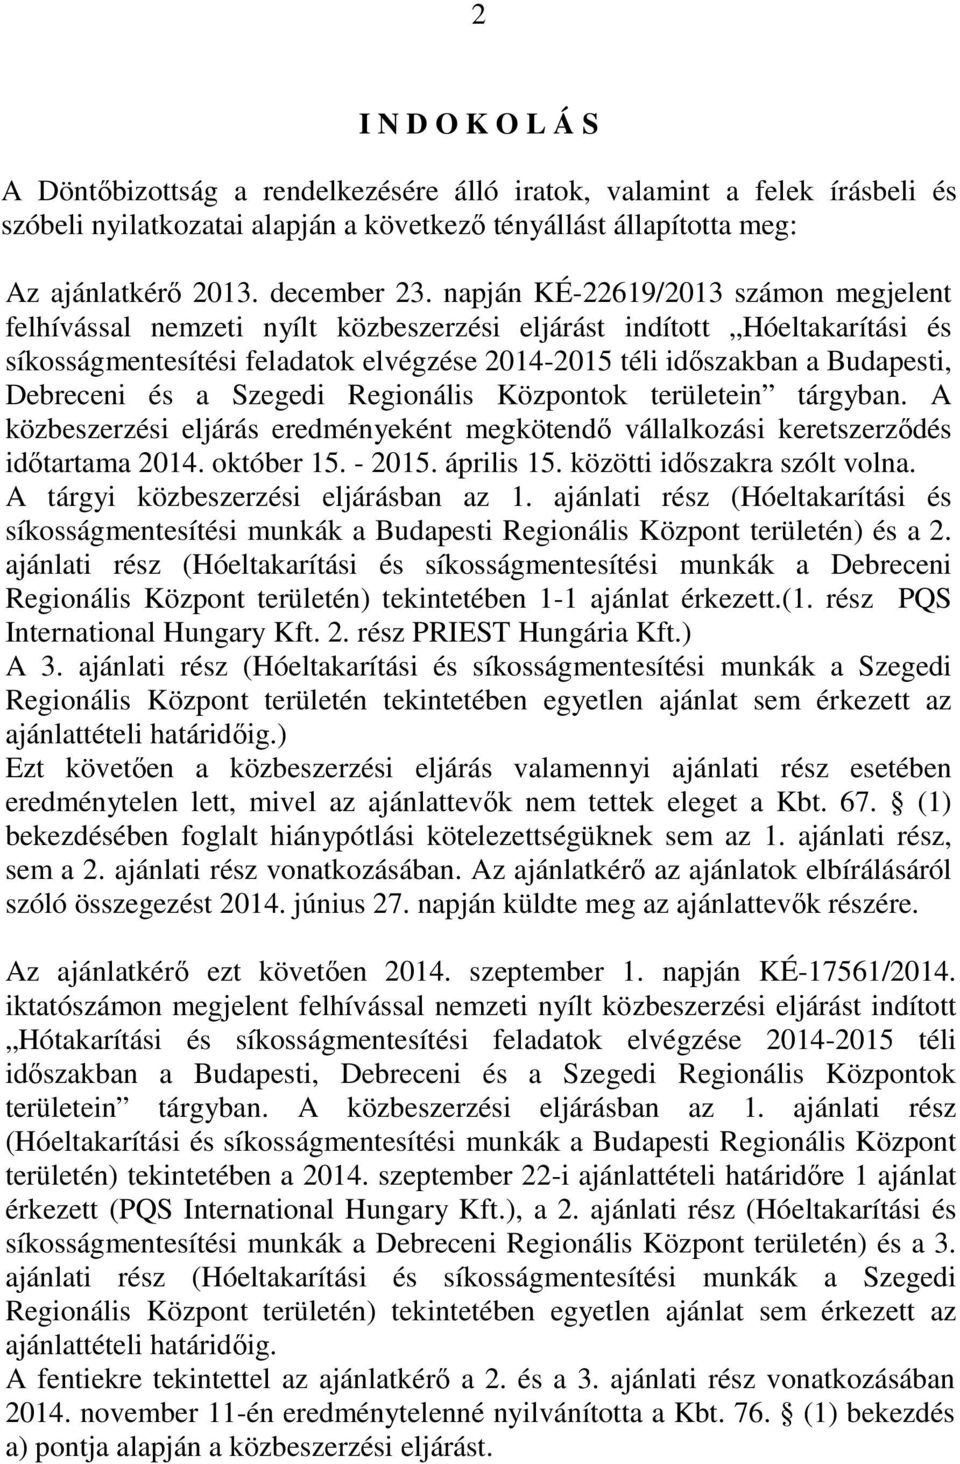 Debreceni és a Szegedi Regionális Központok területein tárgyban. A közbeszerzési eljárás eredményeként megkötendő vállalkozási keretszerződés időtartama 2014. október 15. - 2015. április 15.